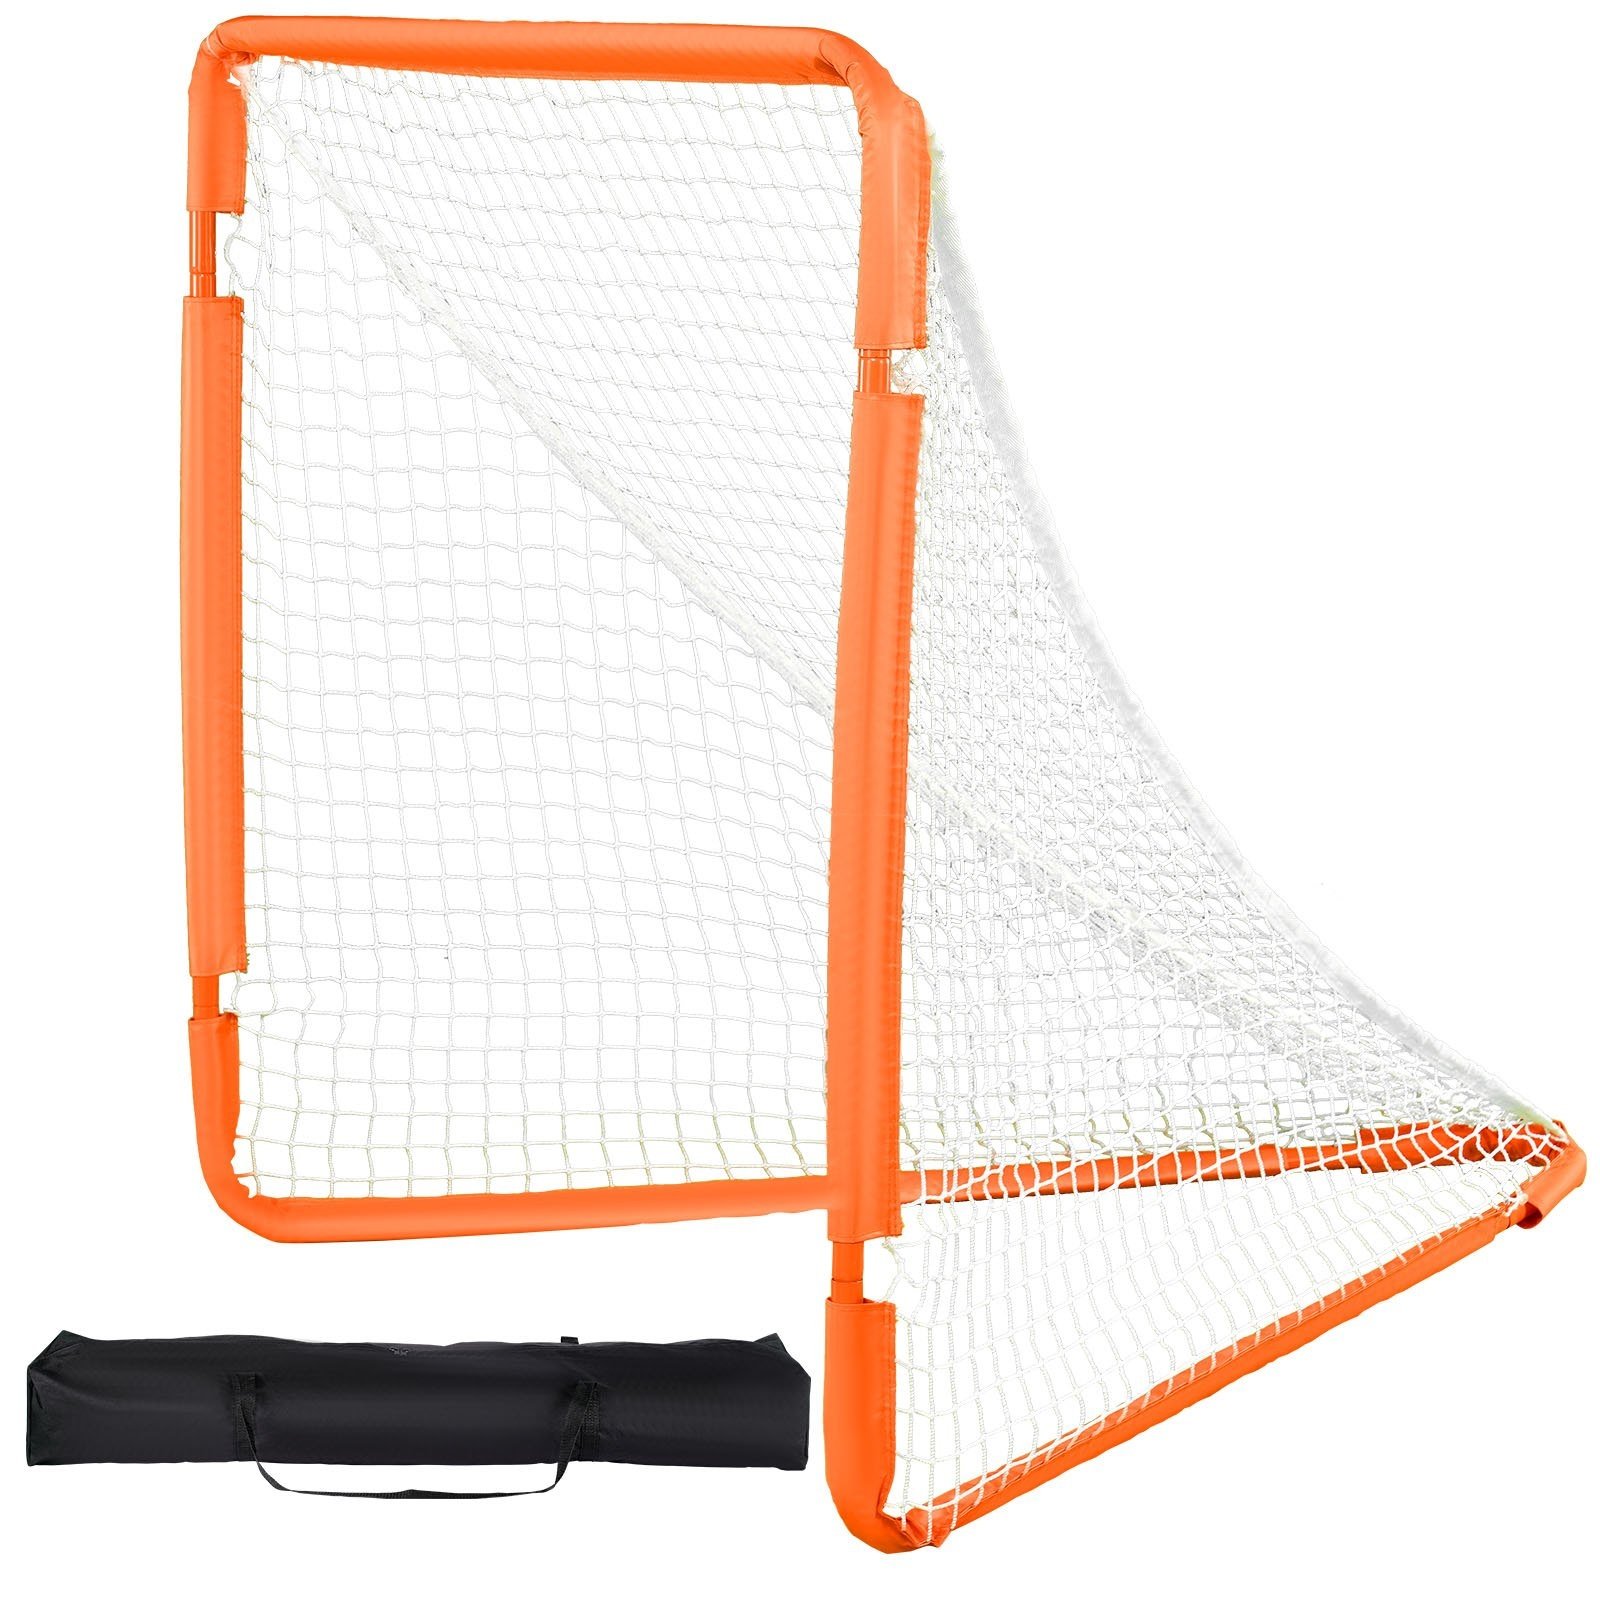 VEVOR Lacrosse-Tor, 4' x 4' kleines Kinder-Lacrosse-Netz, faltbares tragbares Lacrosse-Tor mit Tragetasche, Eisenrahmen-Hinterhof-Trainingsausrüstung, schneller und einfacher Aufbau, perfekt für Jugen